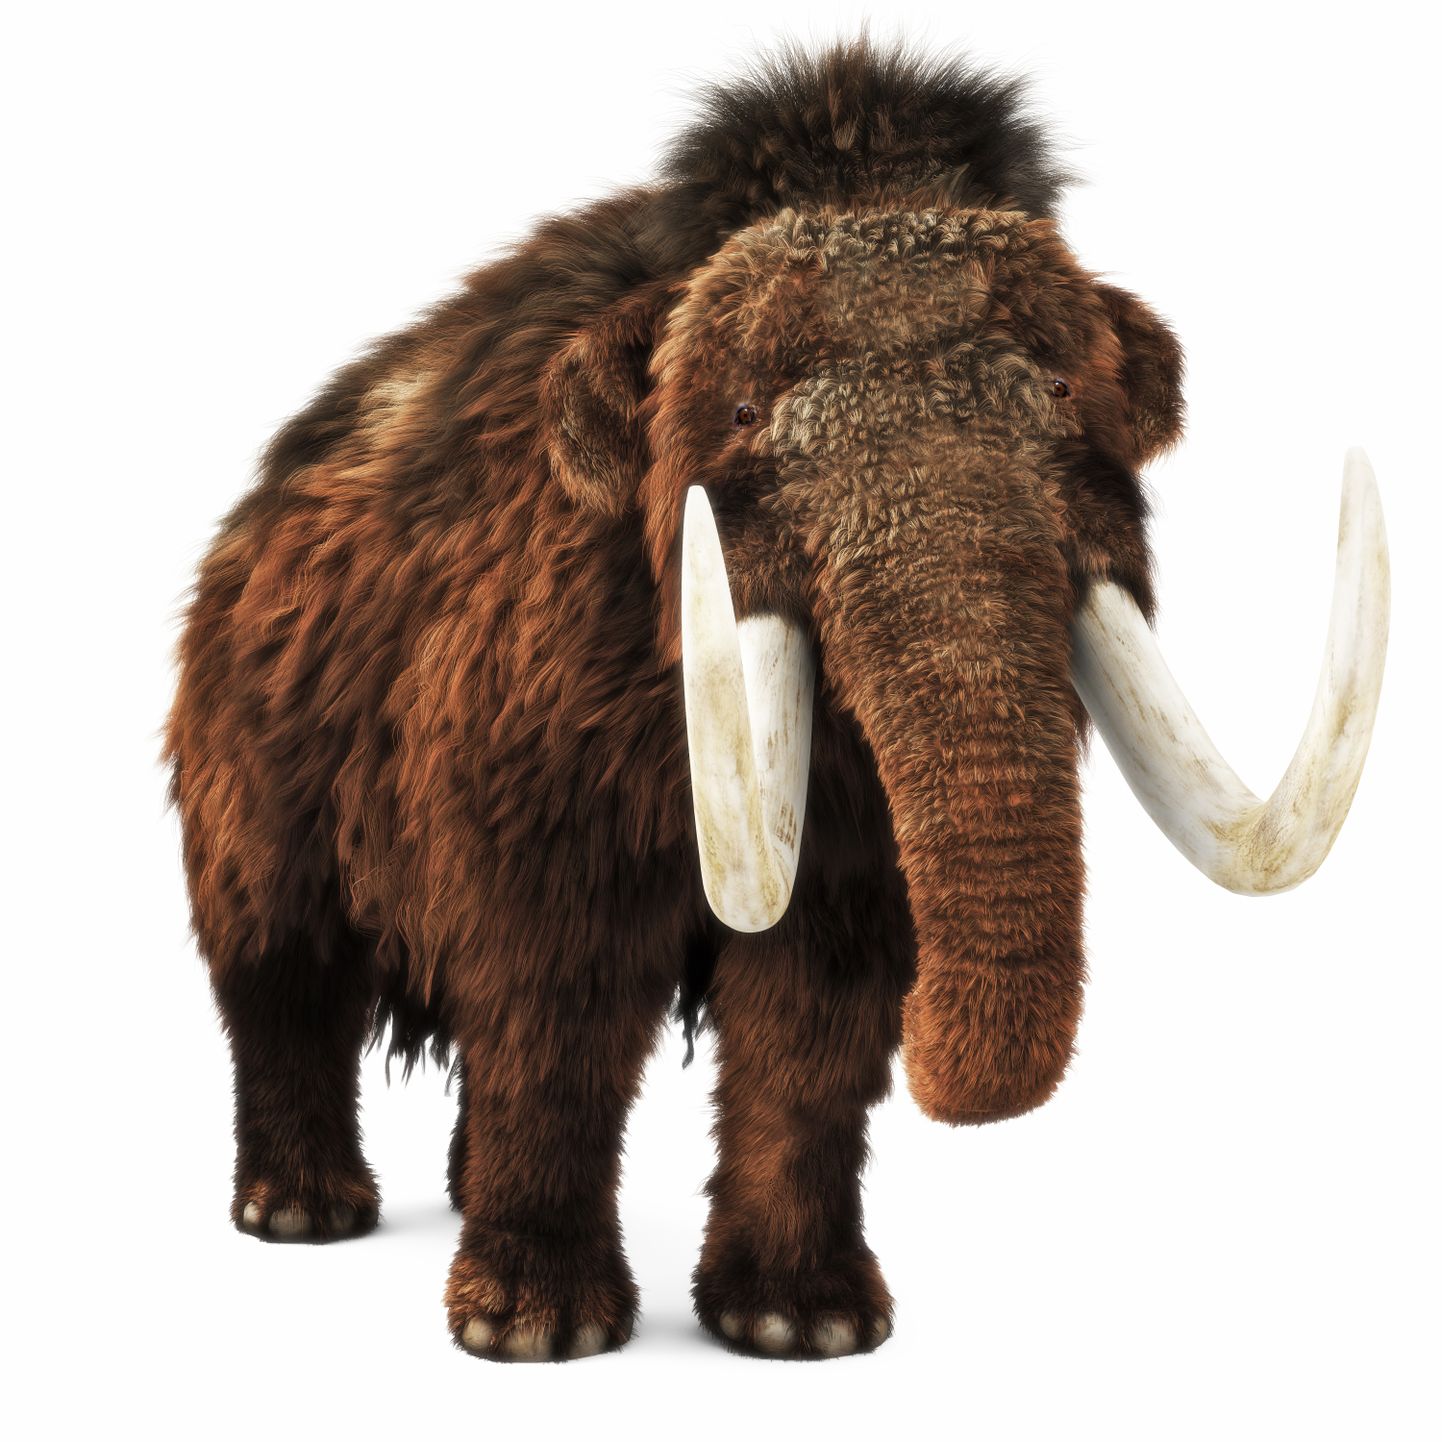 Ehkki mammutileidusid on Eestis avastatud vähe, elasid tõenäoliselt just siin Euroopa viimased selle liigi esindajad.